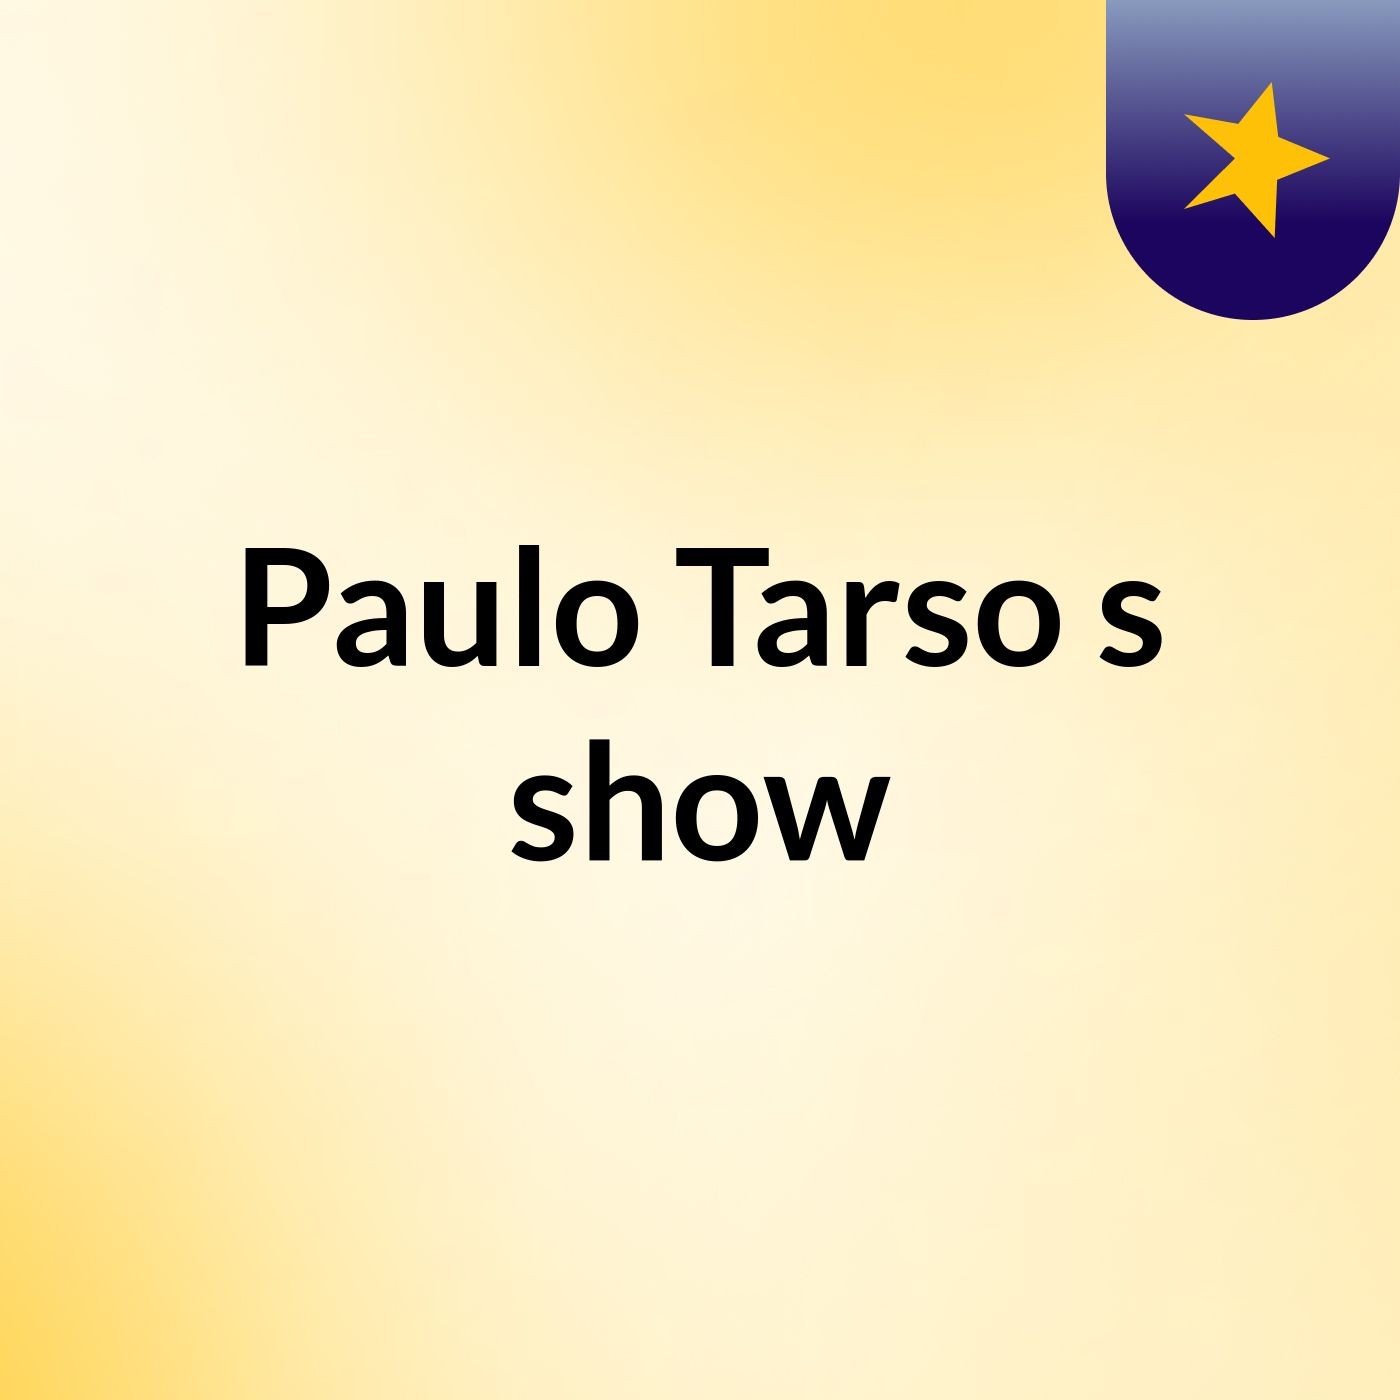 Paulo Tarso's show